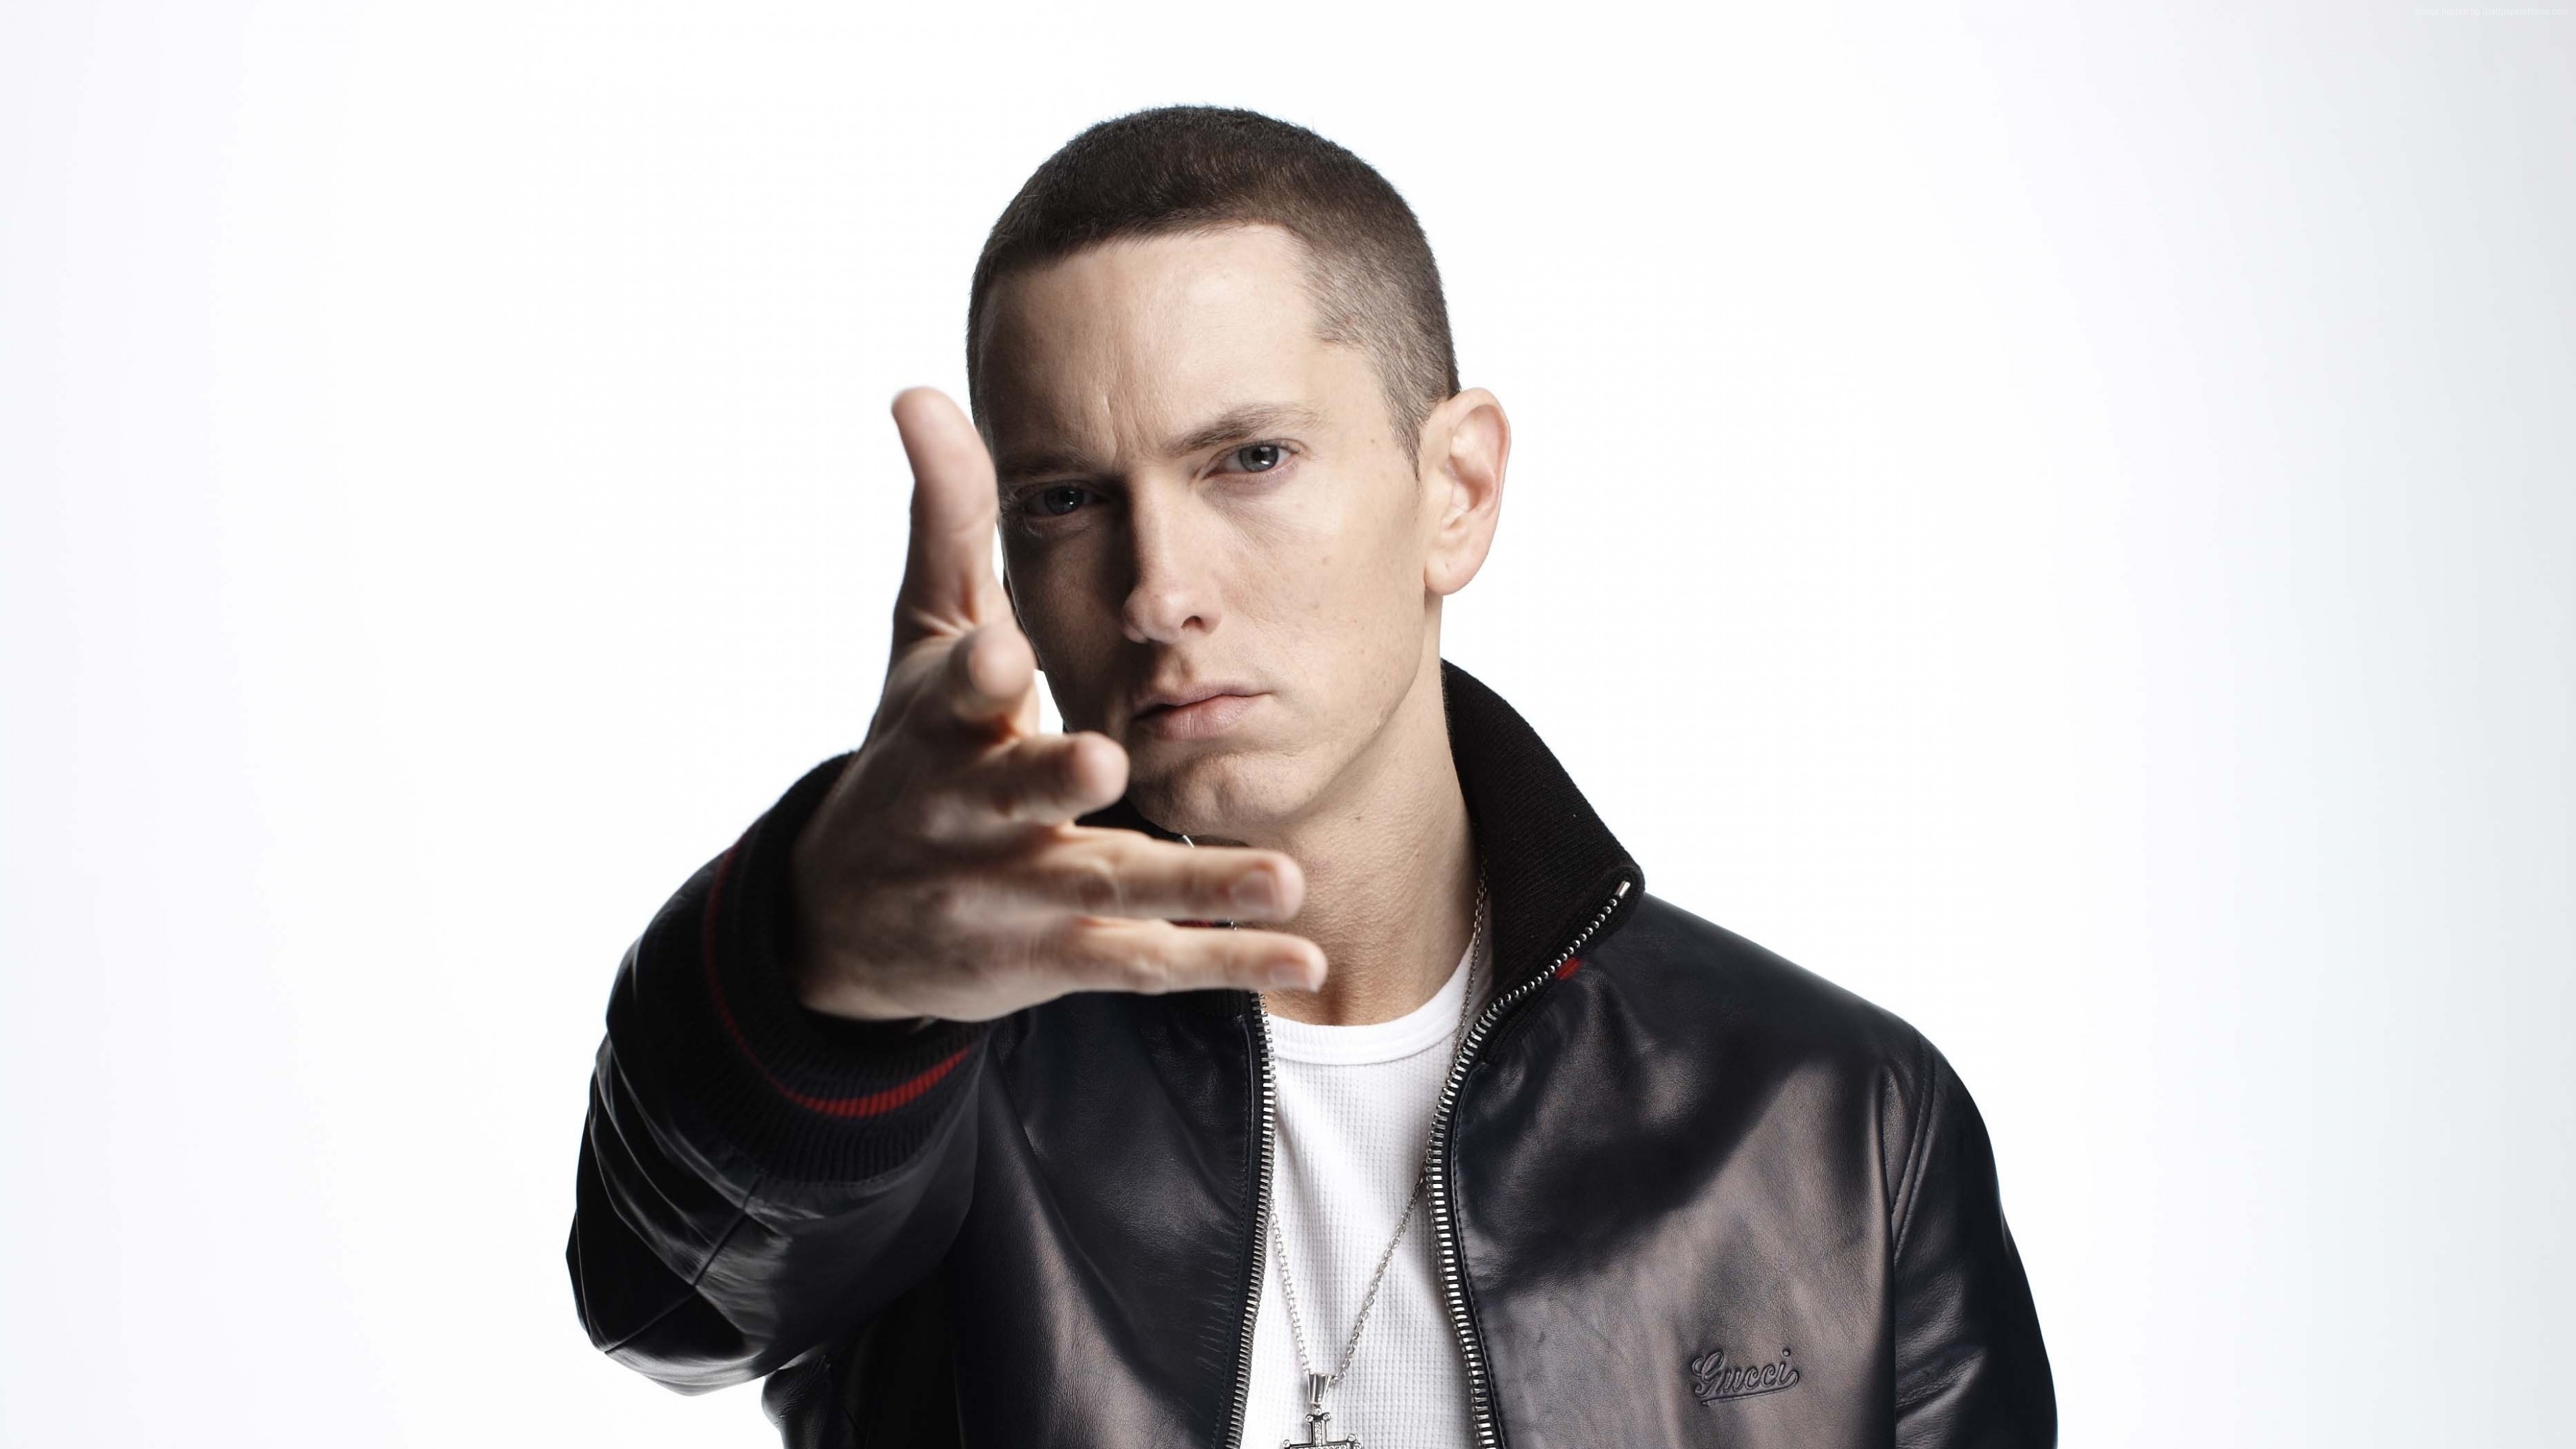 https://on-desktop.com/wps/2017Music_Popular_singer_rapper_Eminem_photo_on_white_background_117582_.jpg